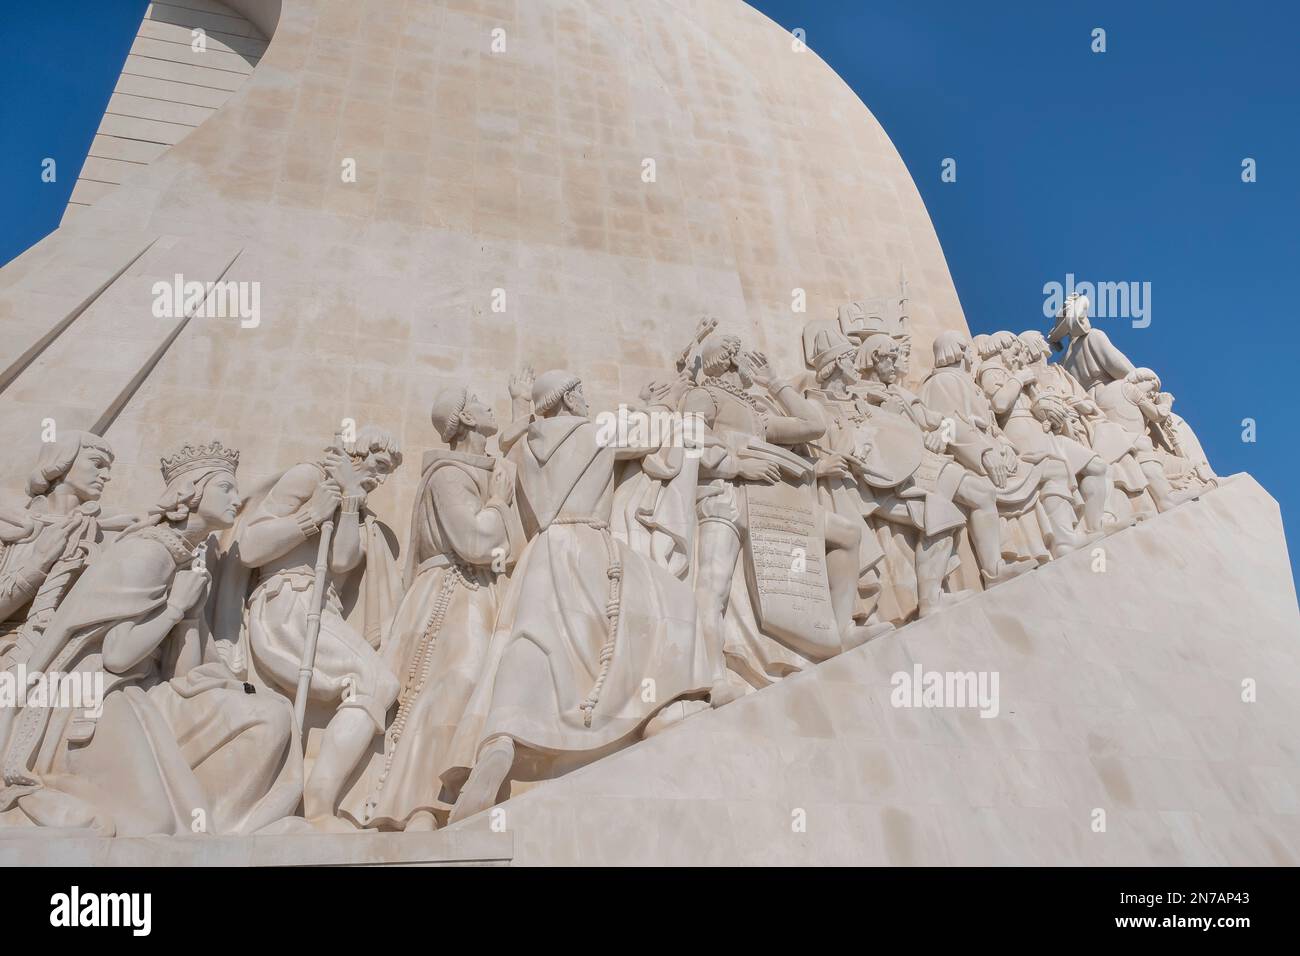 Personaggi famosi nella storia del Portogallo scolpiti in pietra sul lato del monumento alle scoperte, a Belem, lisbona, portogallo, orizzontale Foto Stock